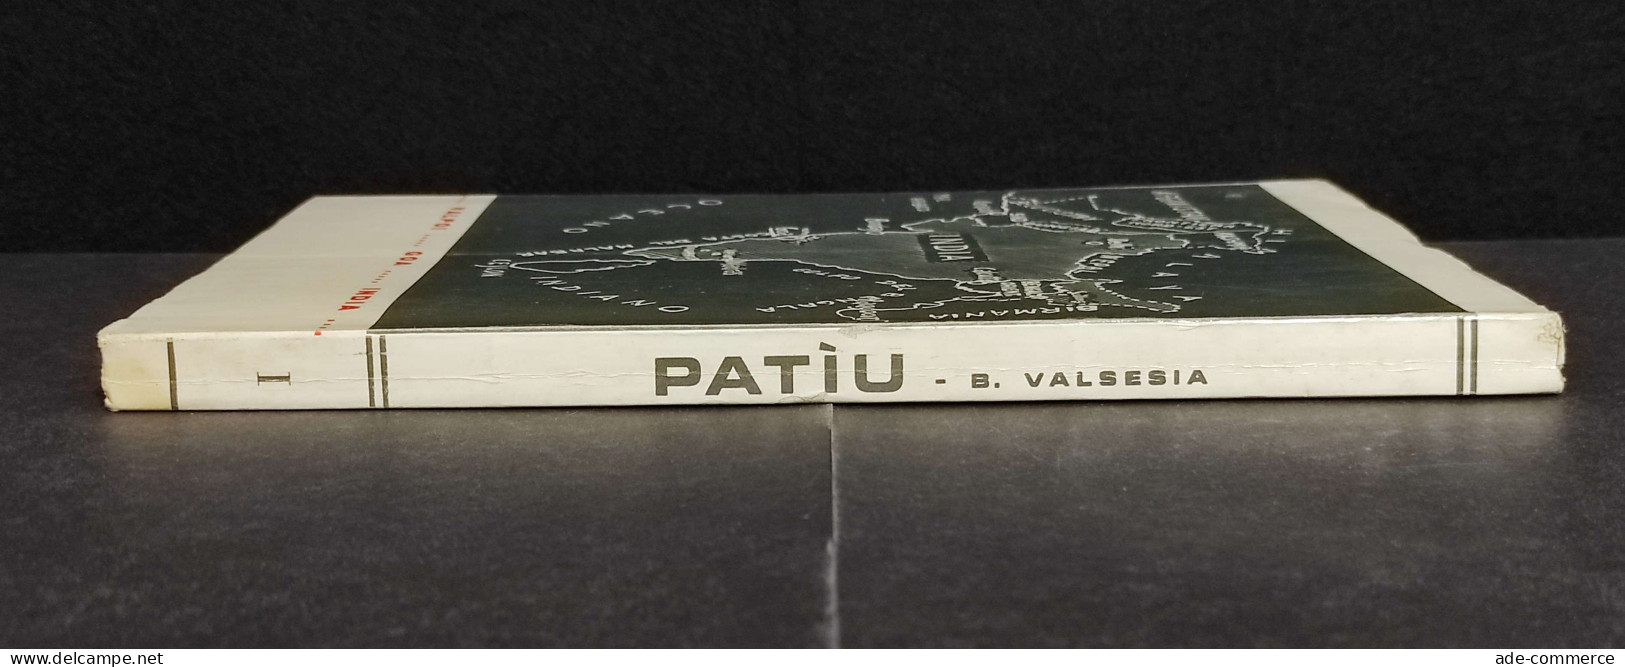 Patìu - Nella Giungla Del Satarì - B. Valsesia - 1967 - Turismo, Viaggi